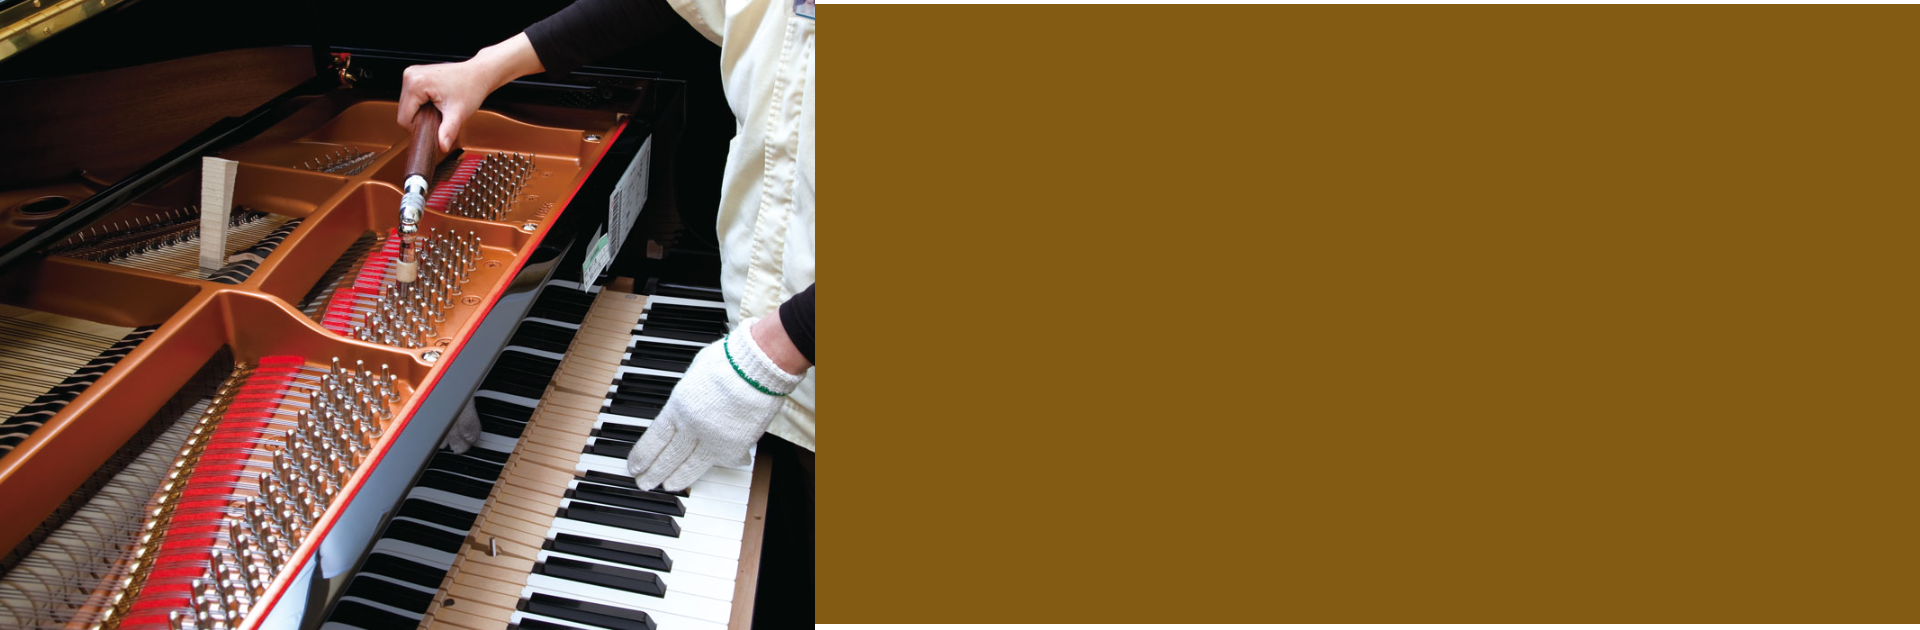 Dapatkan Promo Spesial Piano Yamaha Khusus untuk Anda 